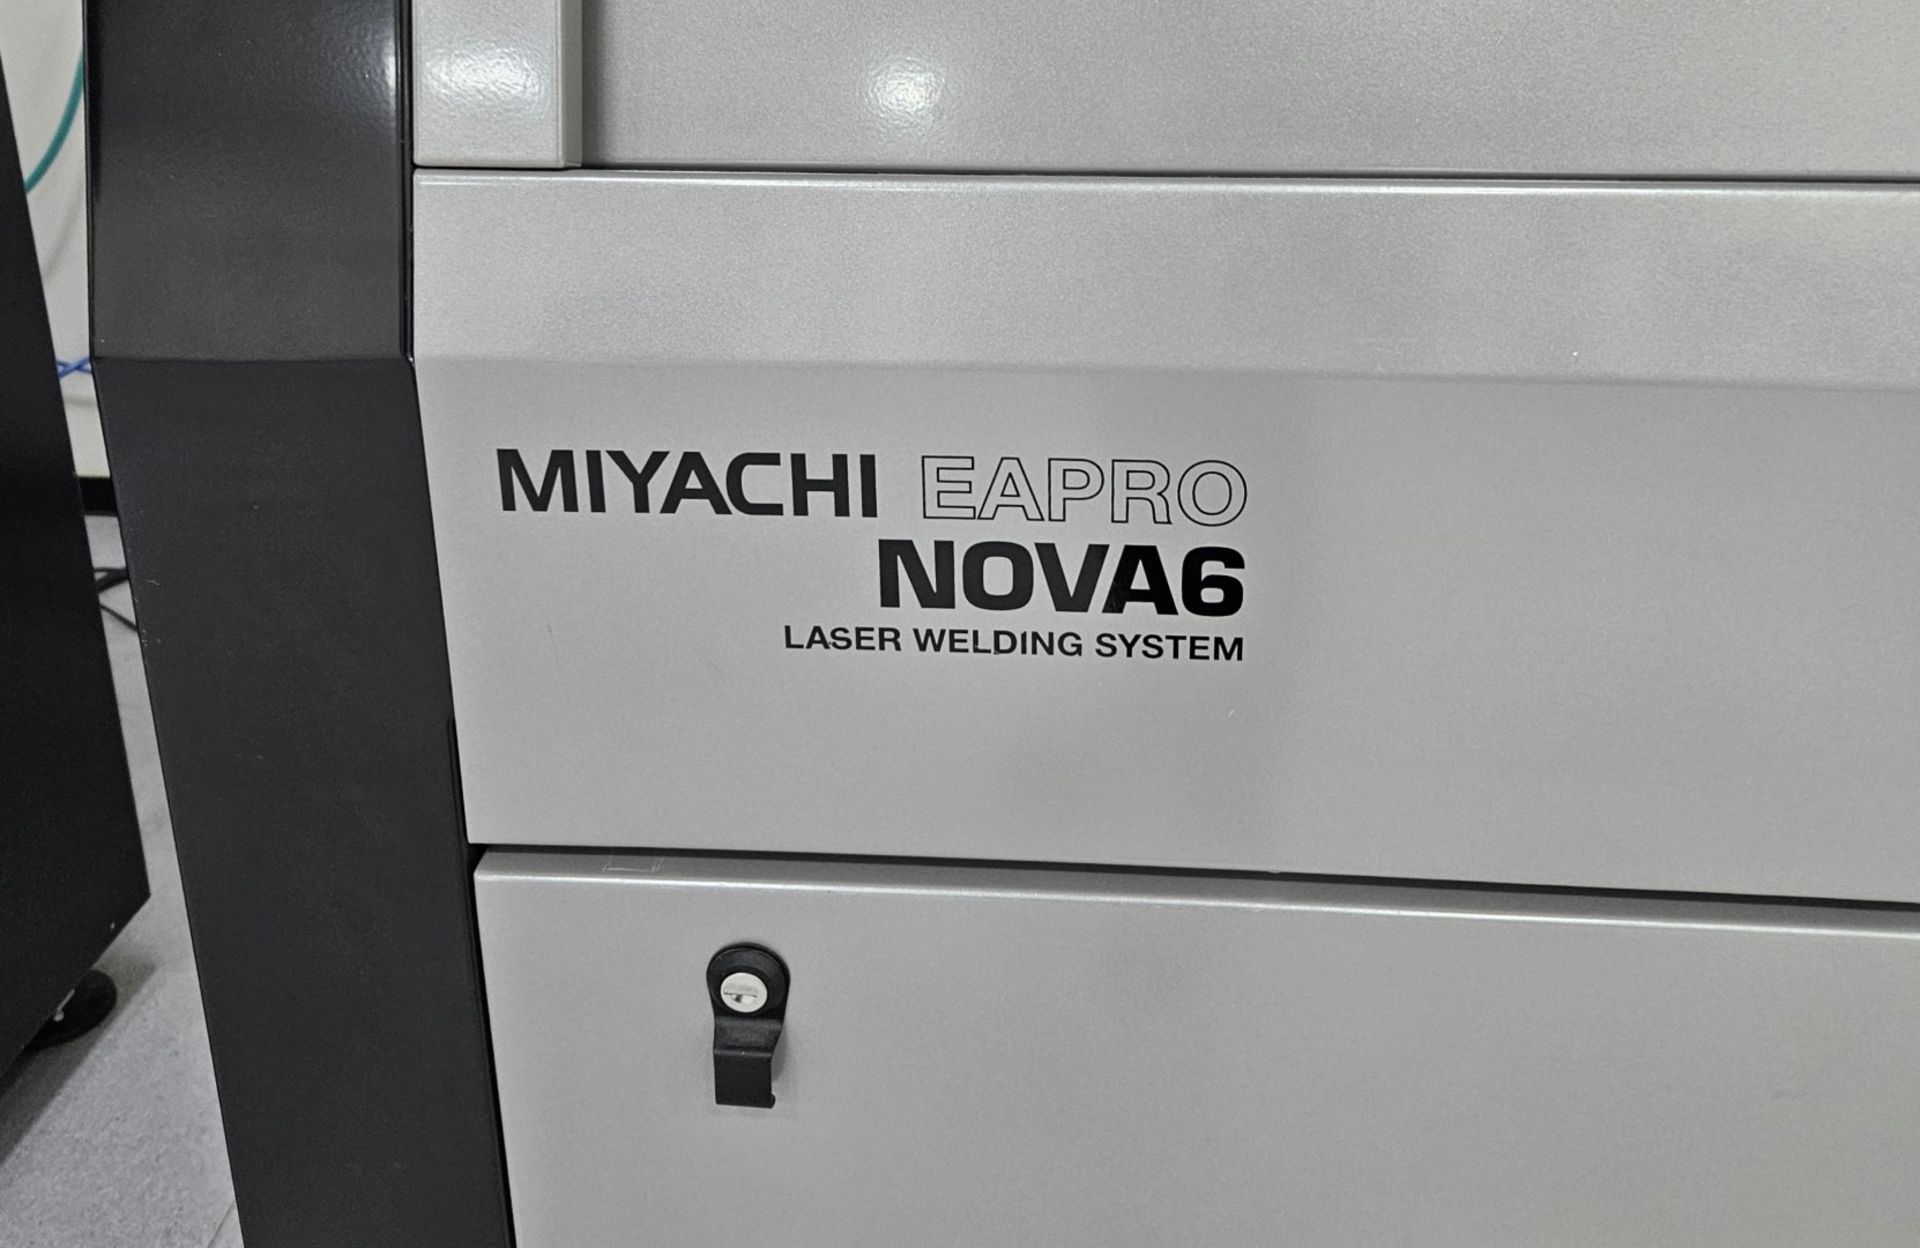 1 x Amada Miyachi Nova 6 Laser CNC Welding Workstation System - Type: 68M0106 - Year: 2019 - Image 3 of 17